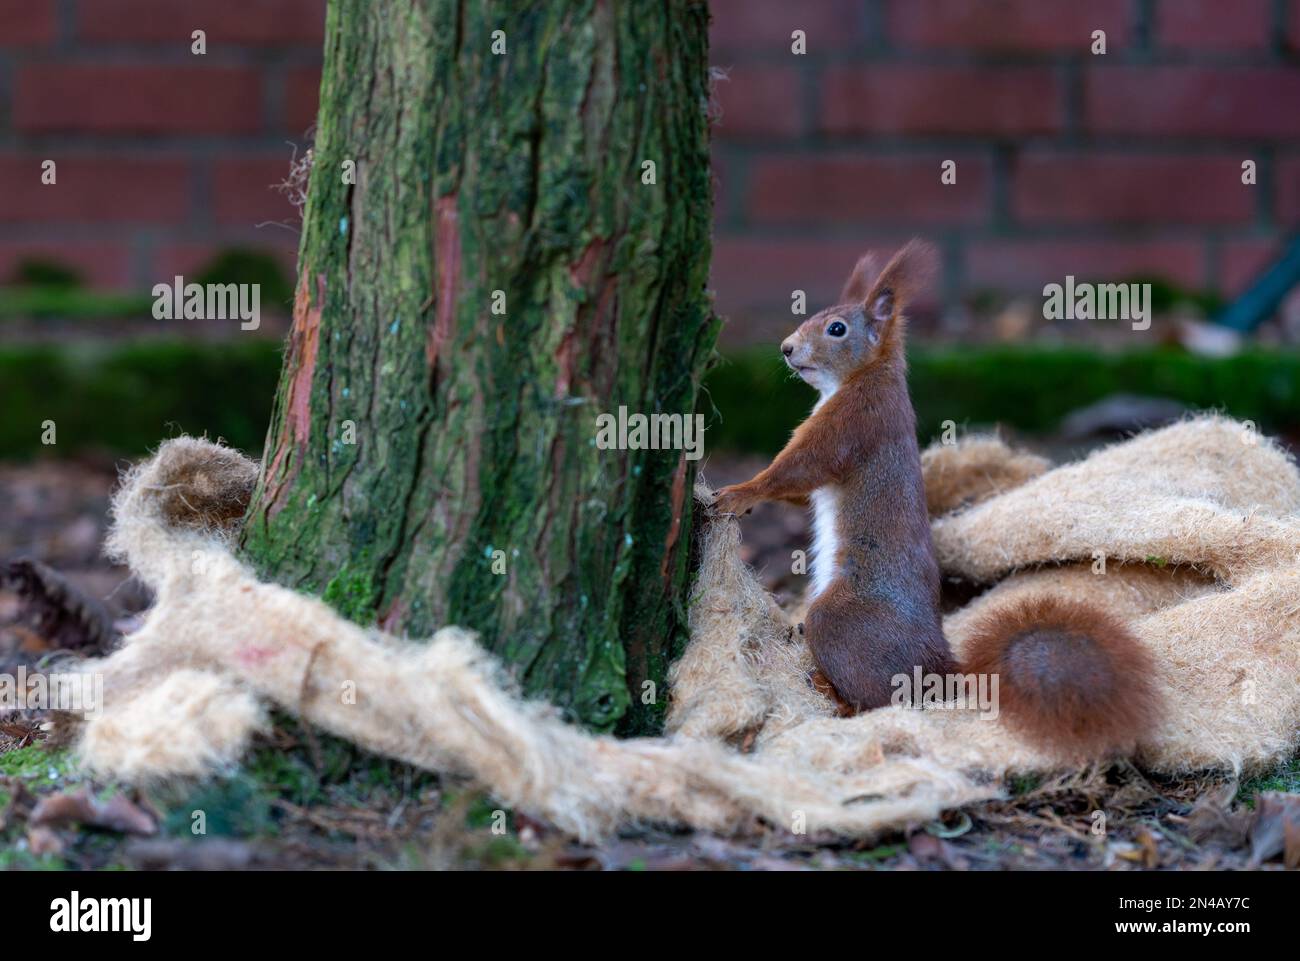 Rotes Eichhörnchen sammelt Nestmaterial von einer Isoliermatte. Stockfoto